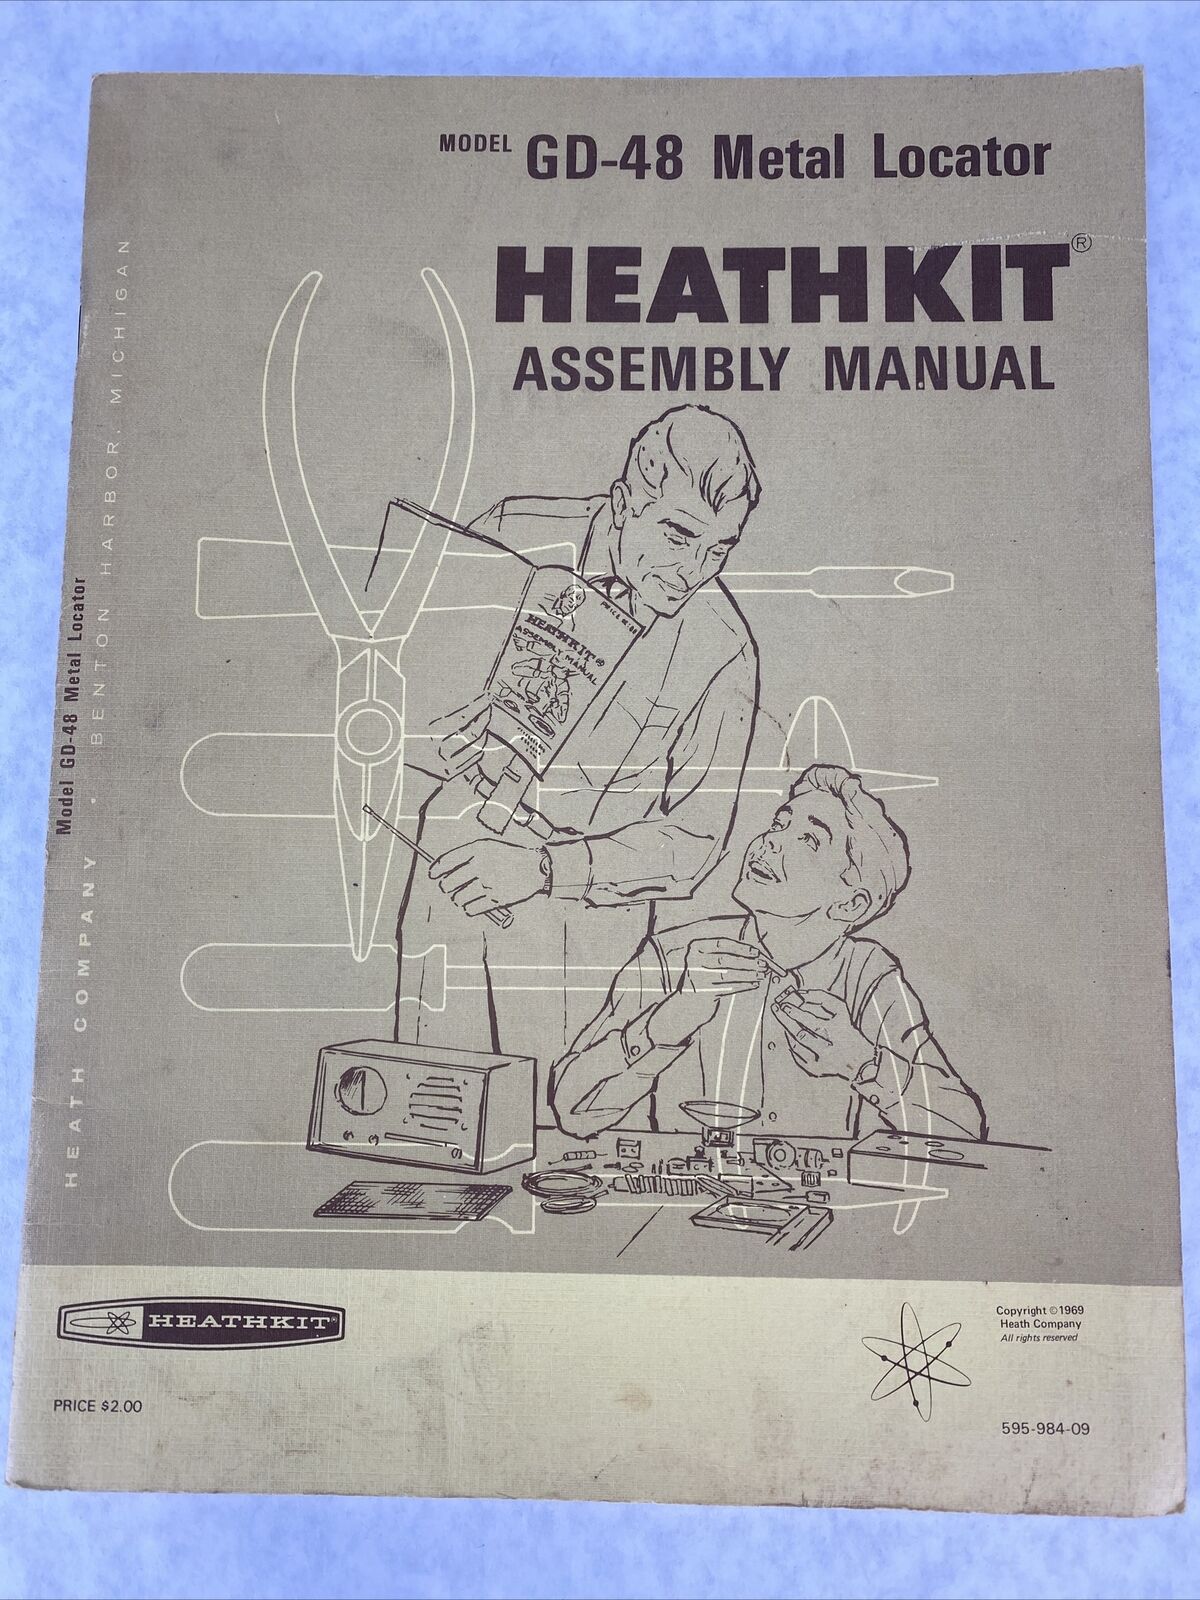 Heathkit GD-48 Metal Locator Assembly Manual 1969 595-984-09